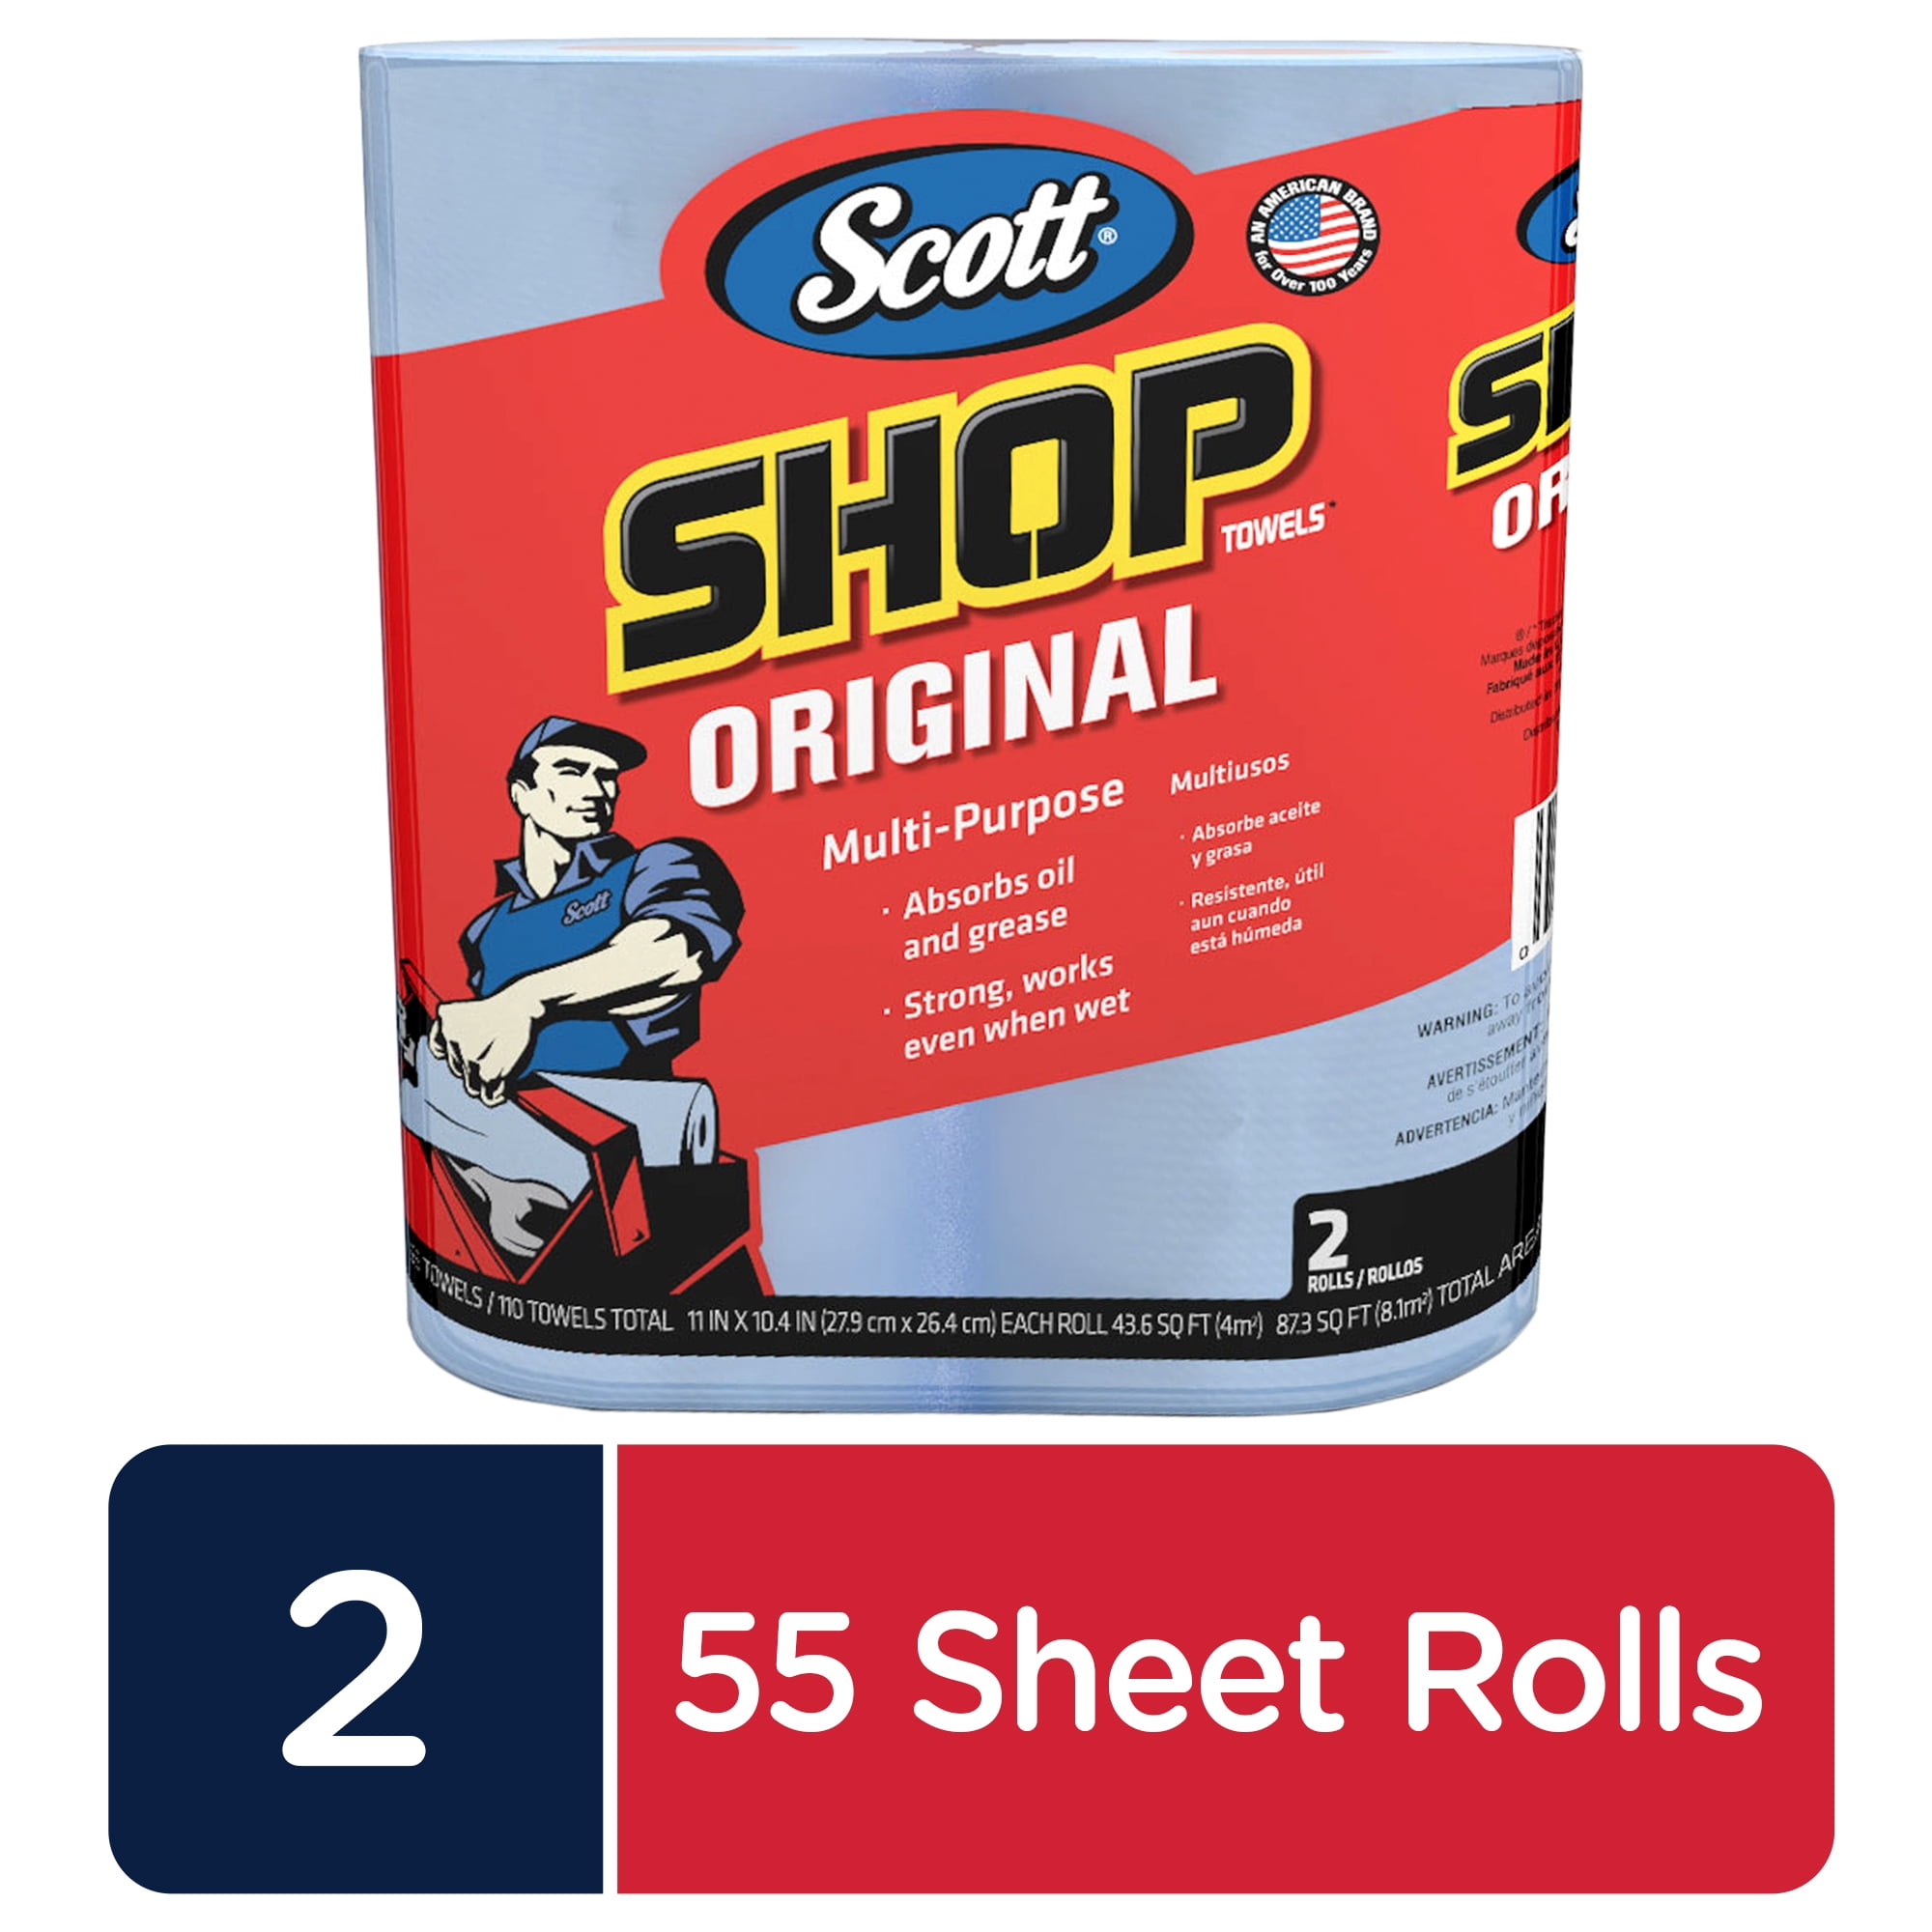 Scott Shop Original-Multi Purpose Pack 55 Towels Per Roll Sheet Size 11" X 10.4" 